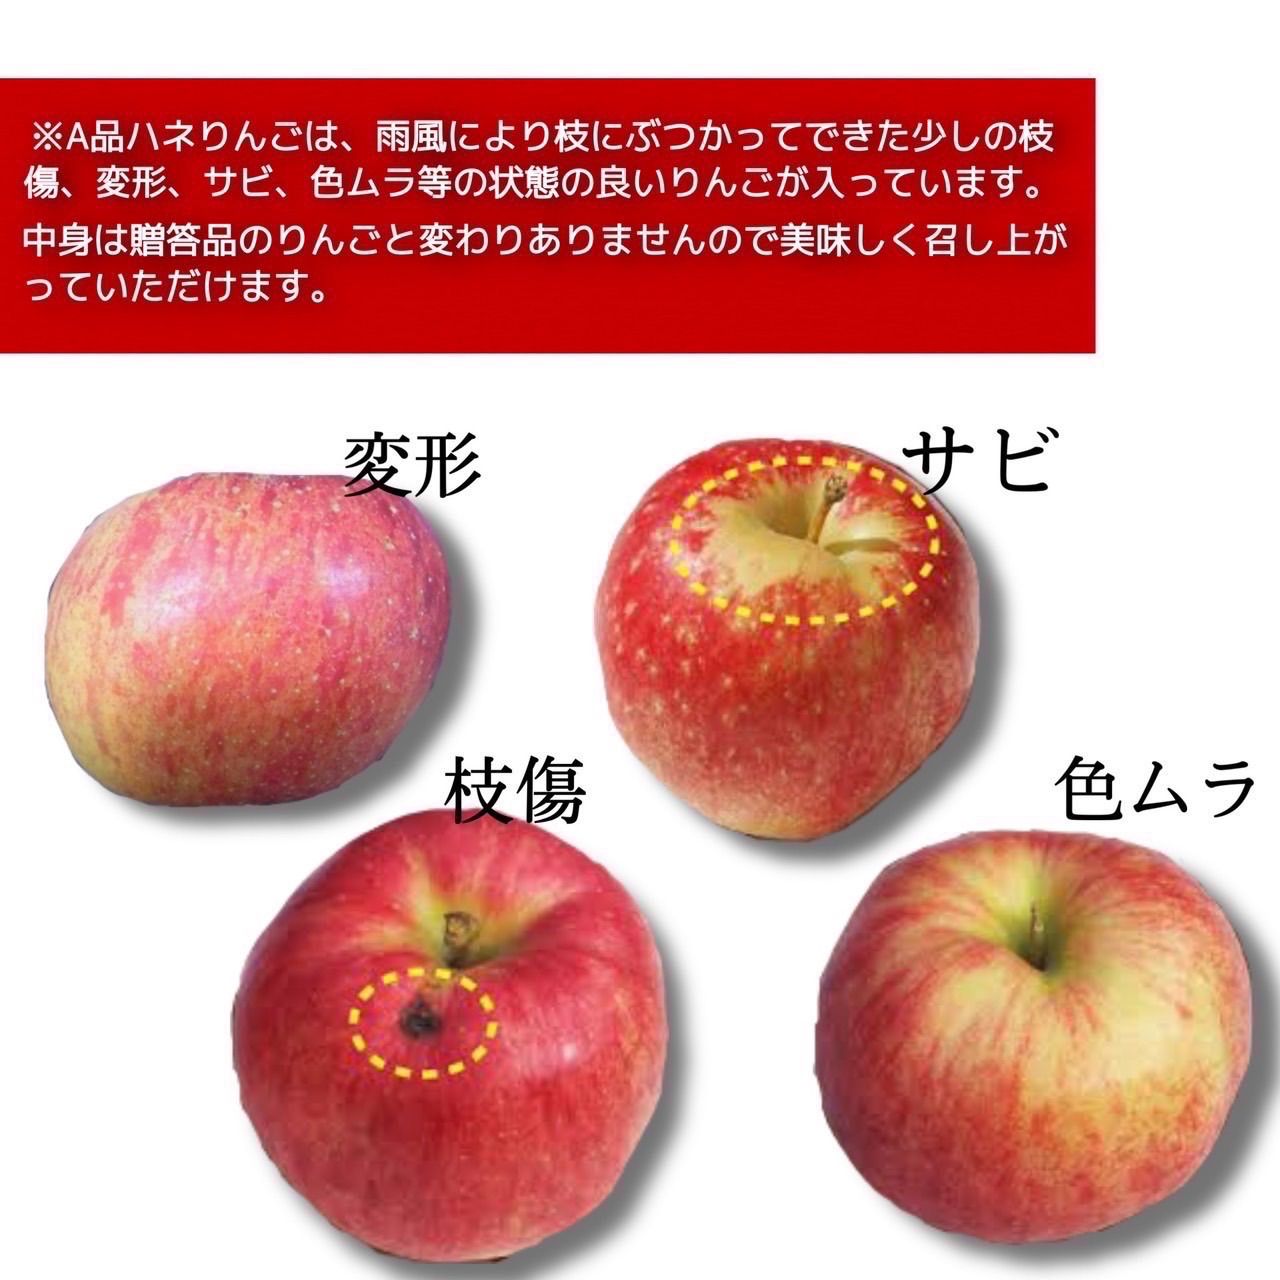 青森県産 最大4種ミックス りんご【A品5kg】【送料無料】【農家直送】ふじ-5